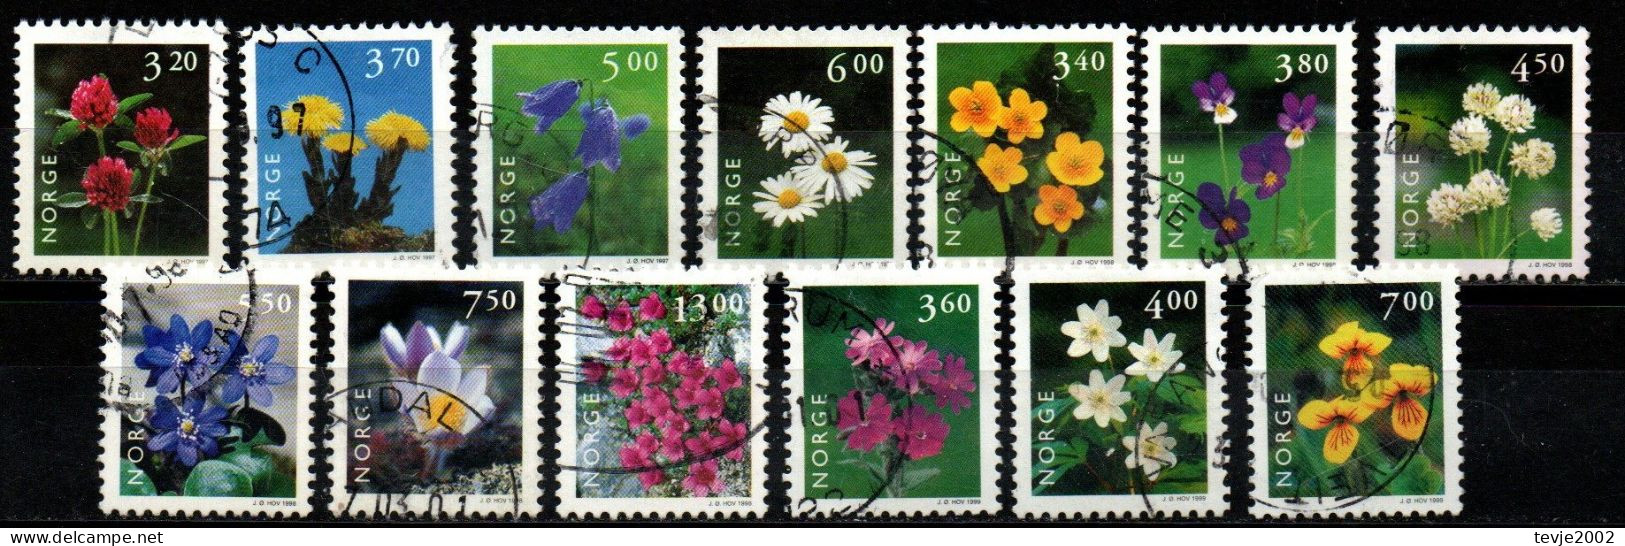 Norwegen Norge 1997 - 1999 - Freimarken Blumen - Gestempelt Used - Gebraucht